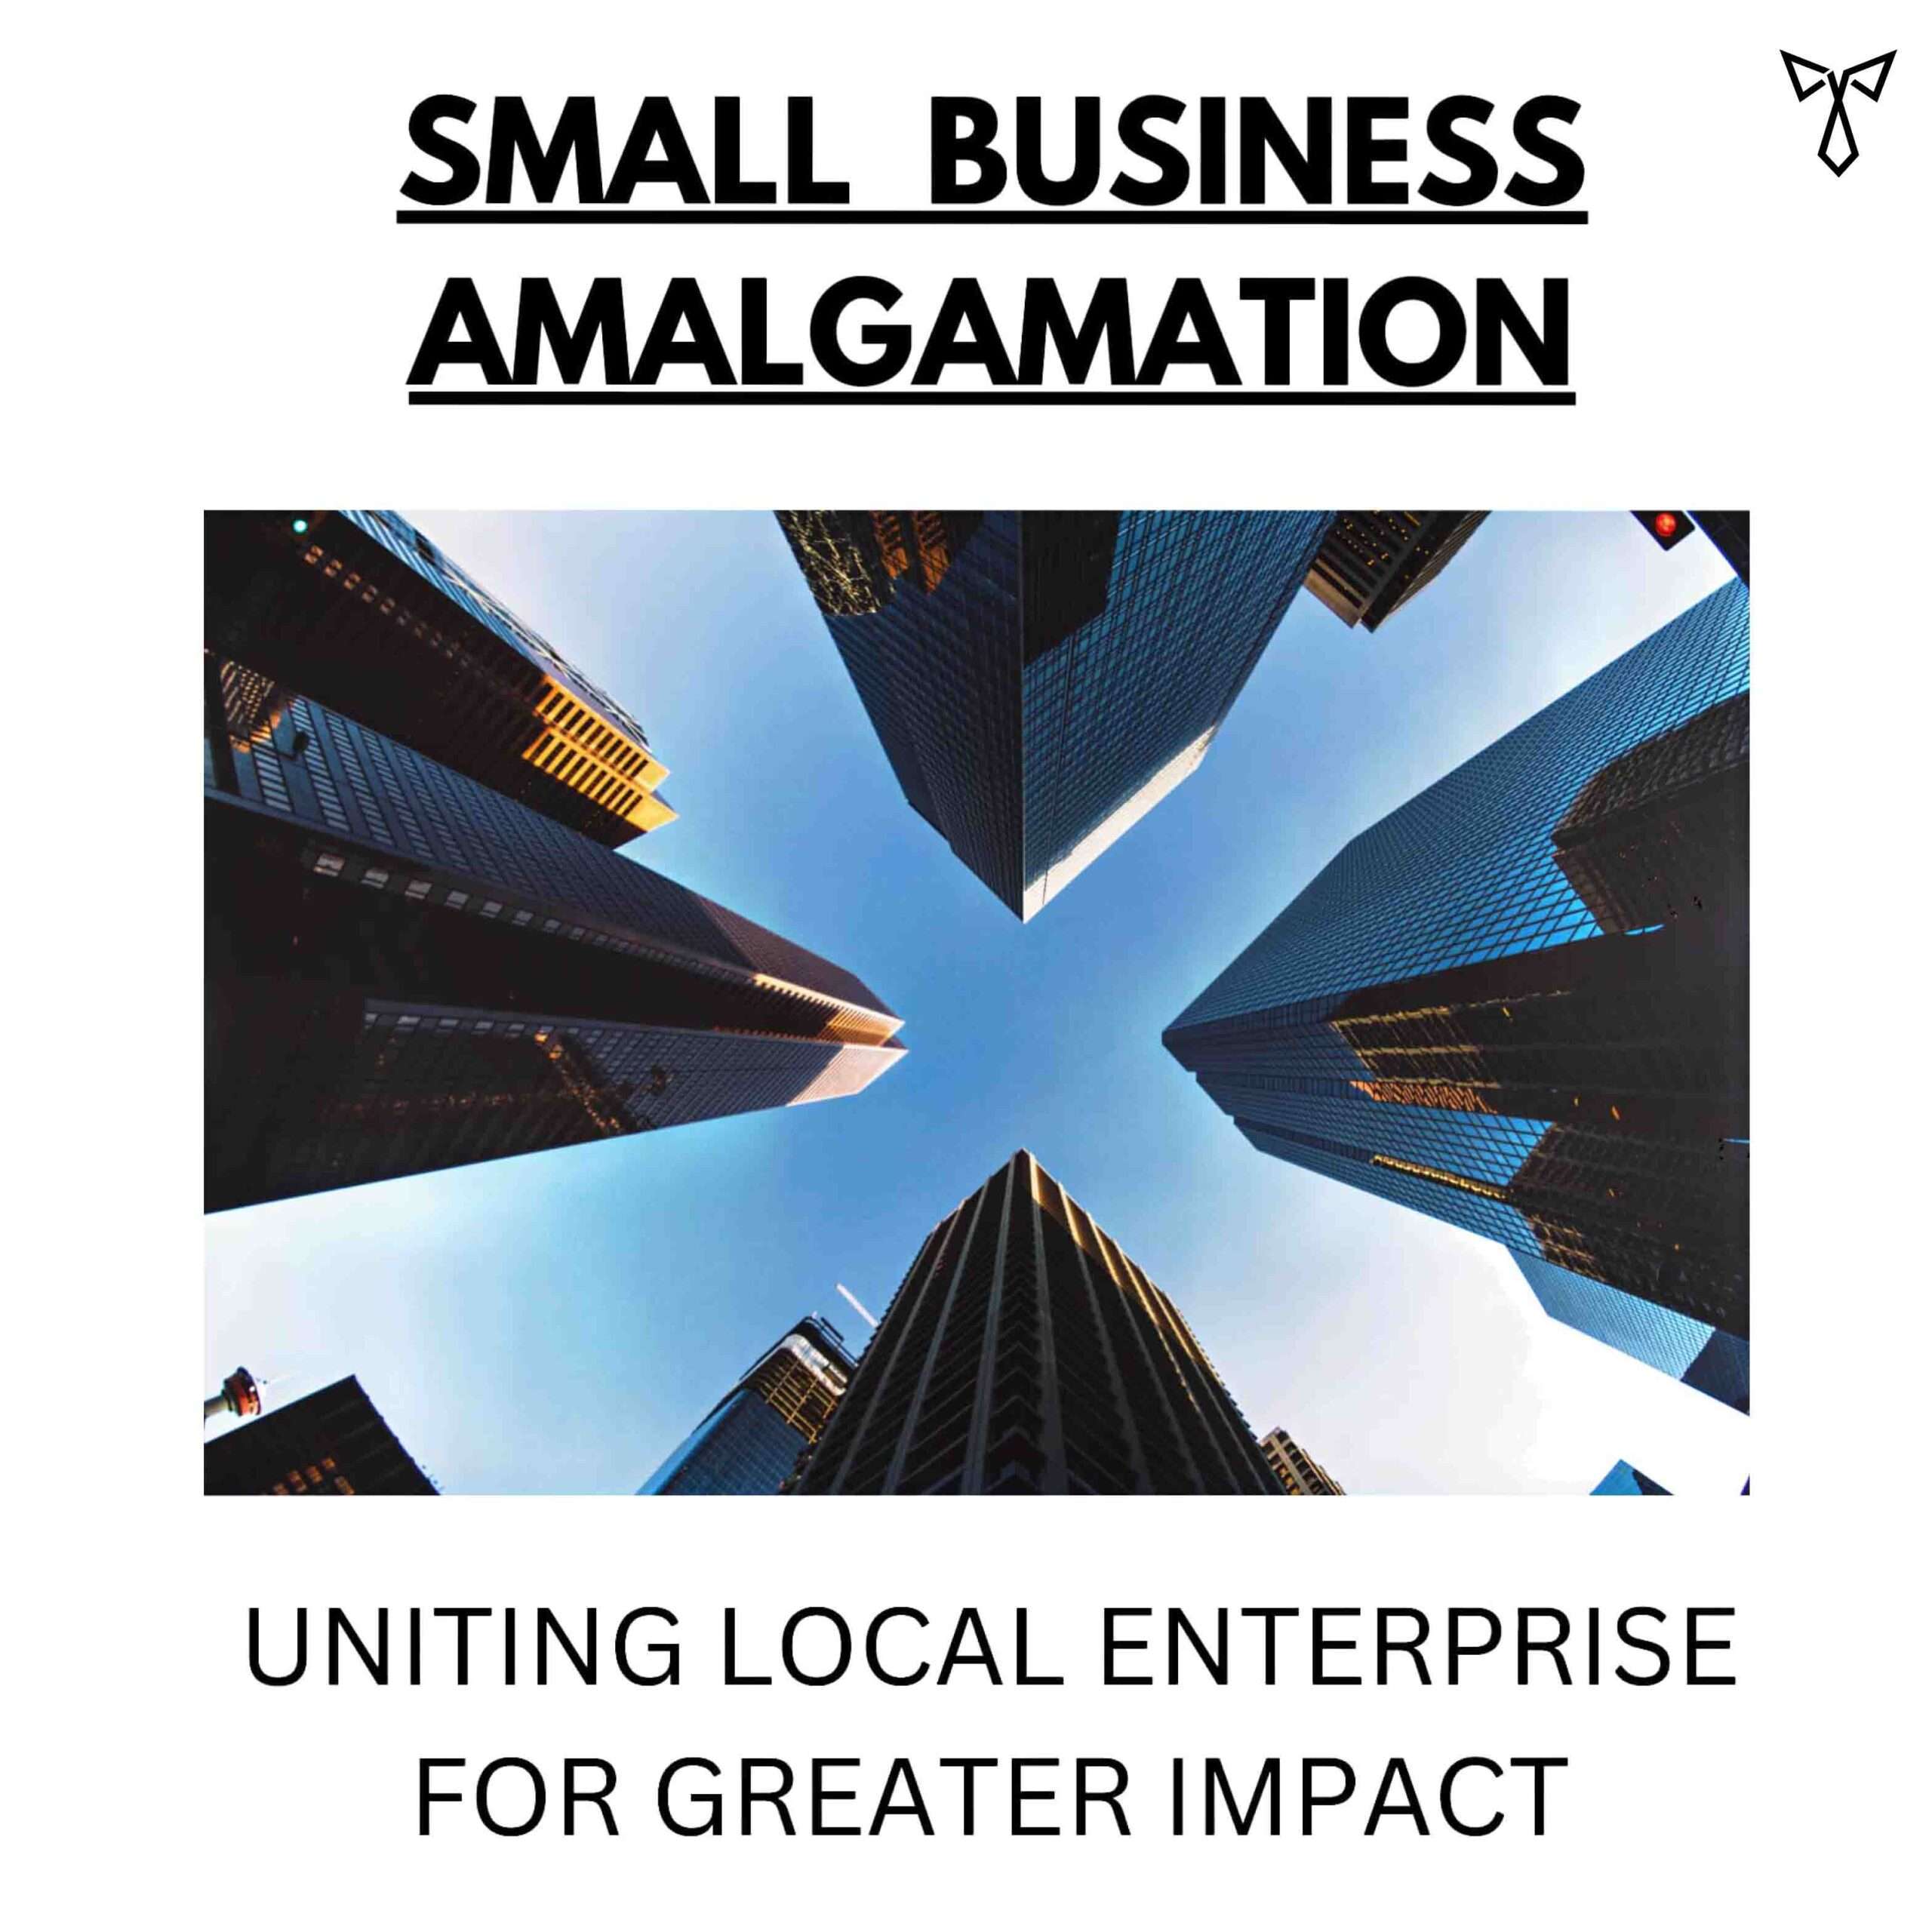 Small Business Amalgamation